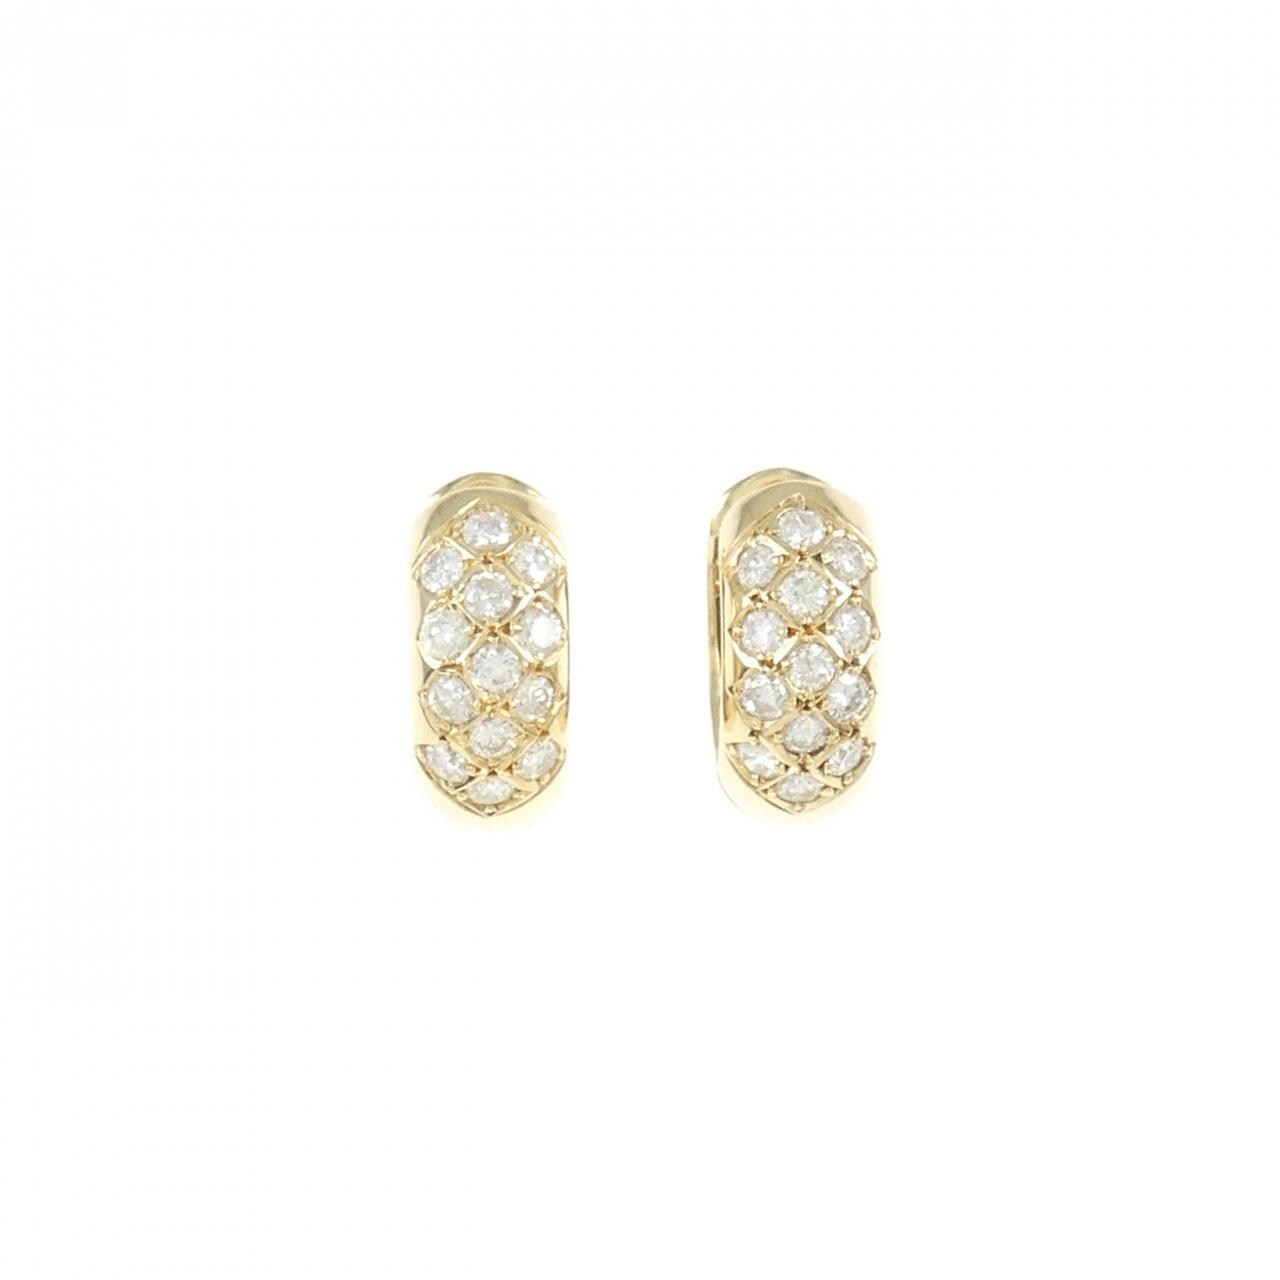 K18YG Diamond Earrings 0.59CT